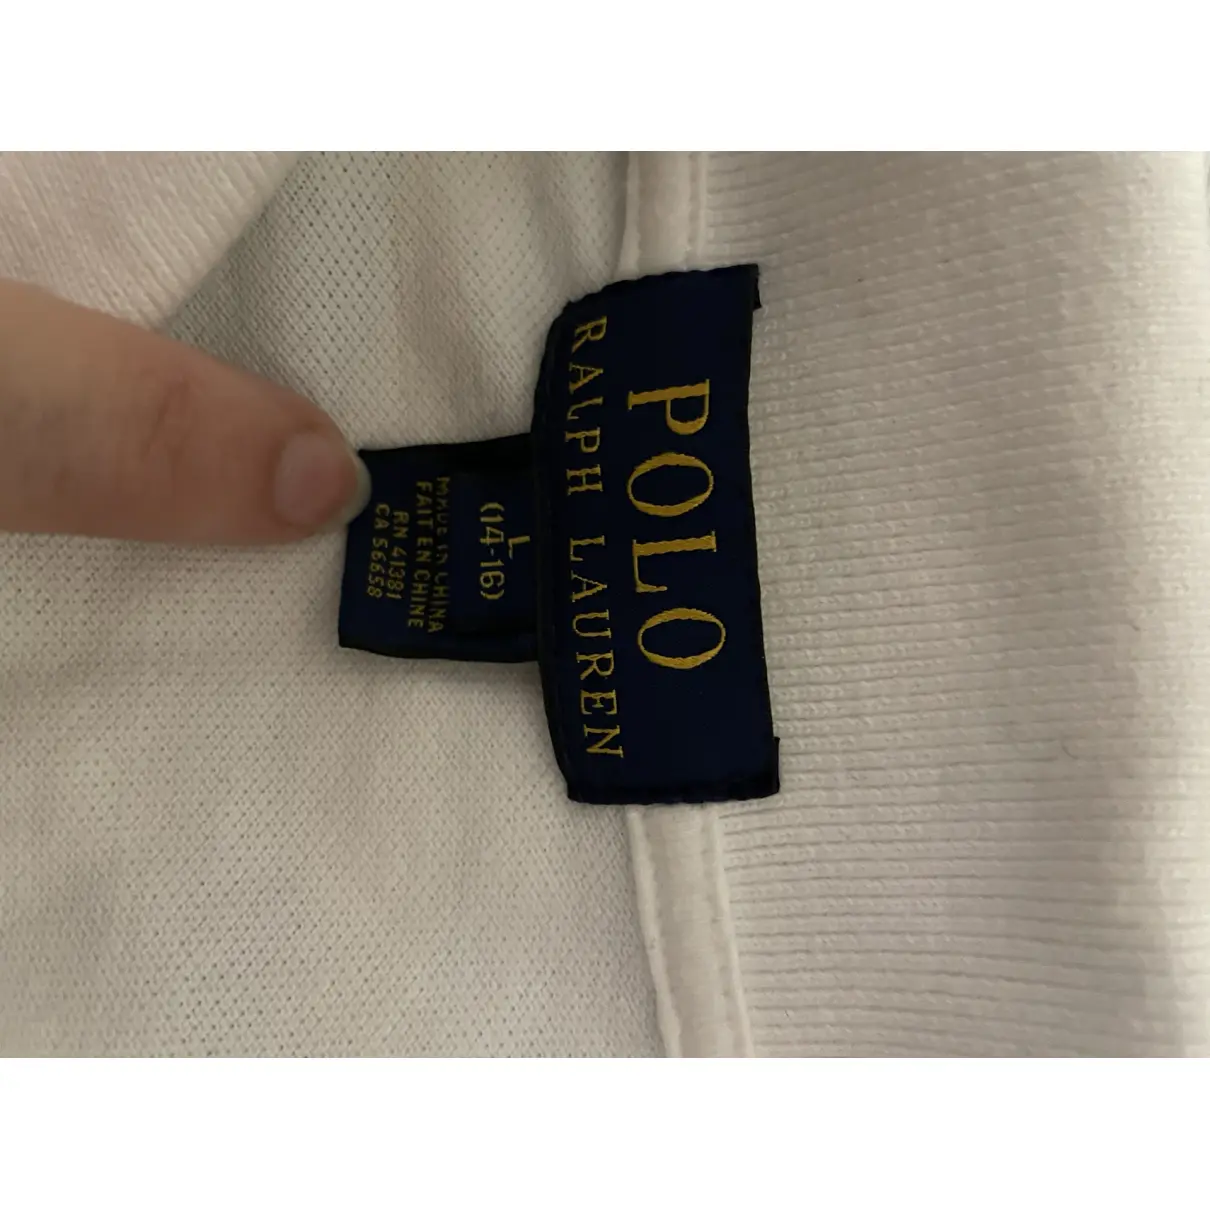 Polo Polo Ralph Lauren